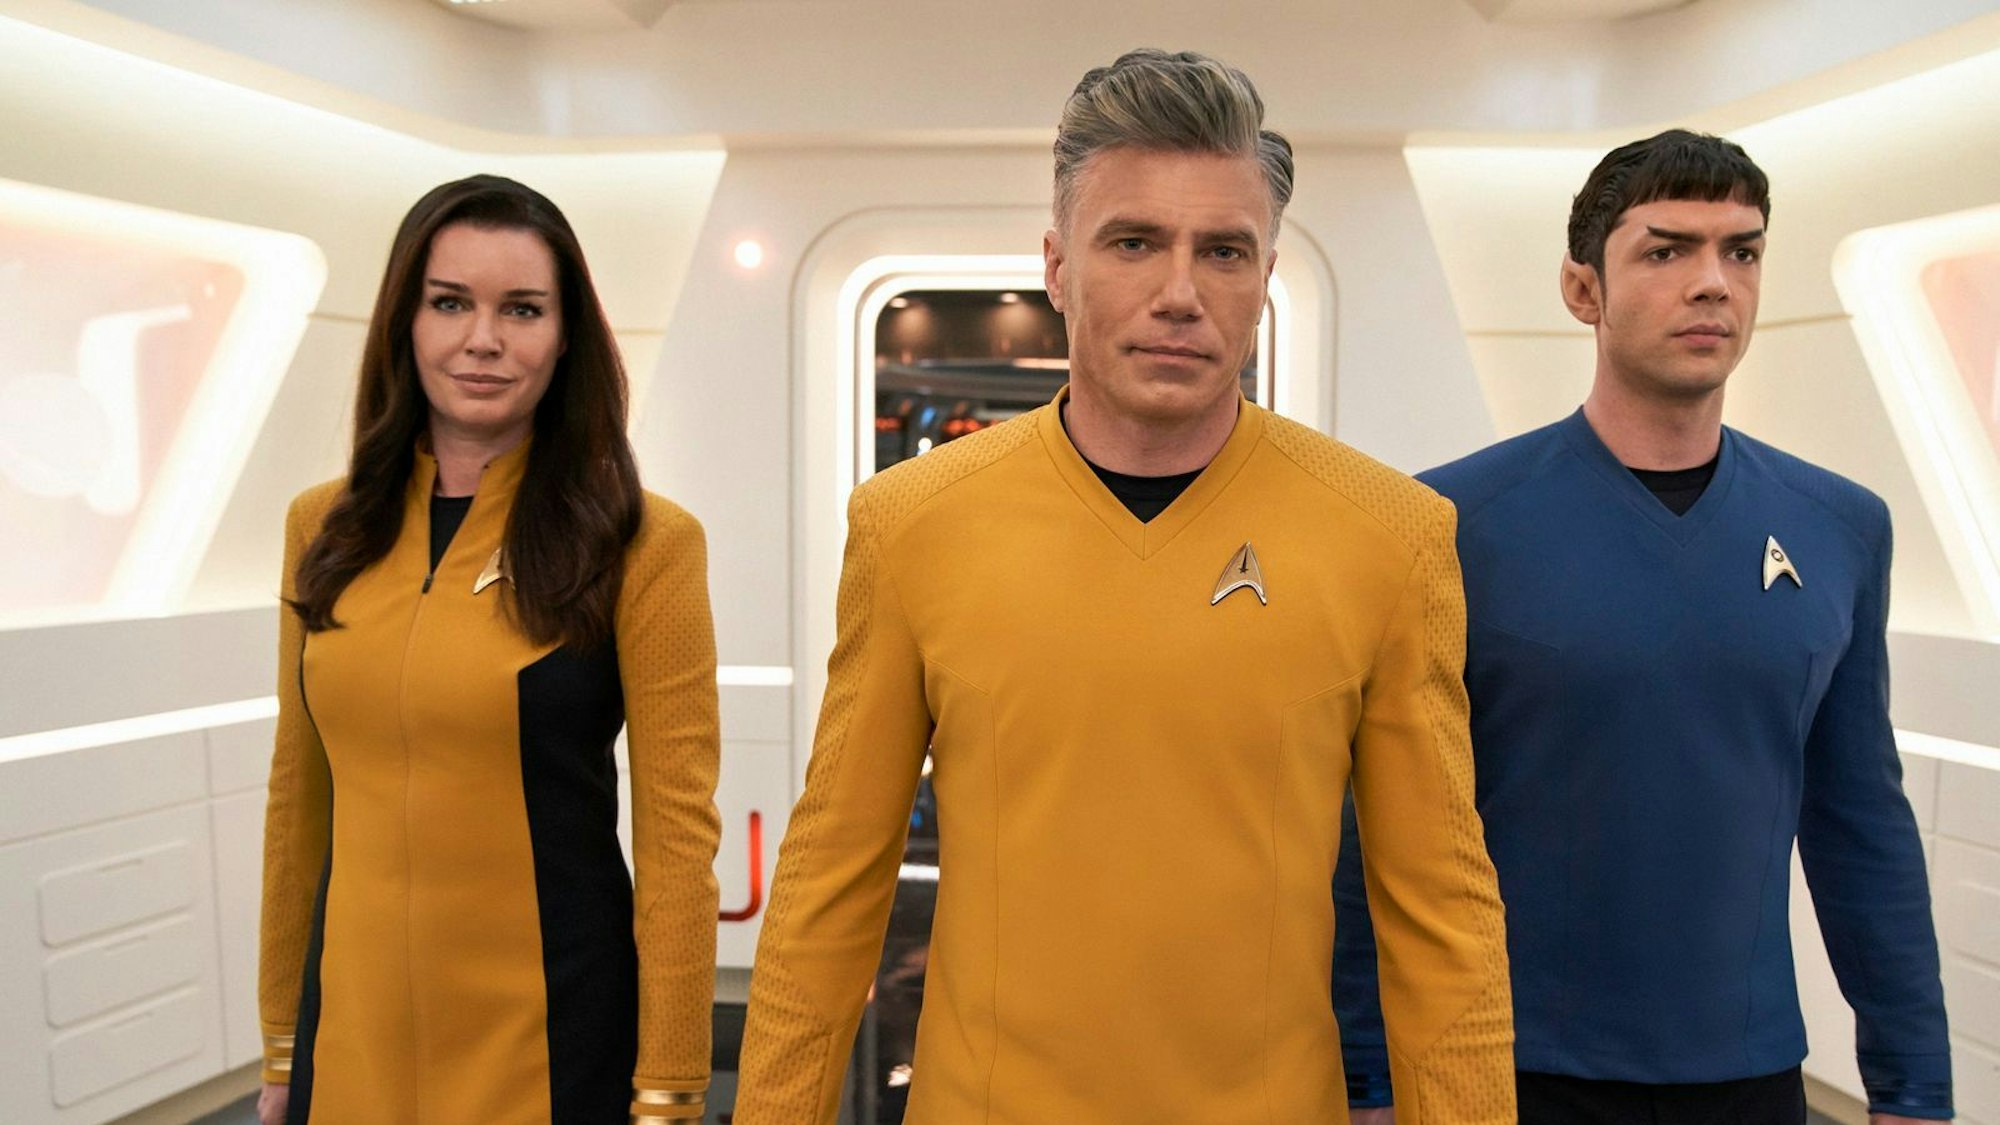 Drei neue Helden laufen durch das Raumschiff Enterprise: Nummer Eins Una (Rebecca Romijn), Captain Pike (Anson Mount) und Spock (Ethan Peck)